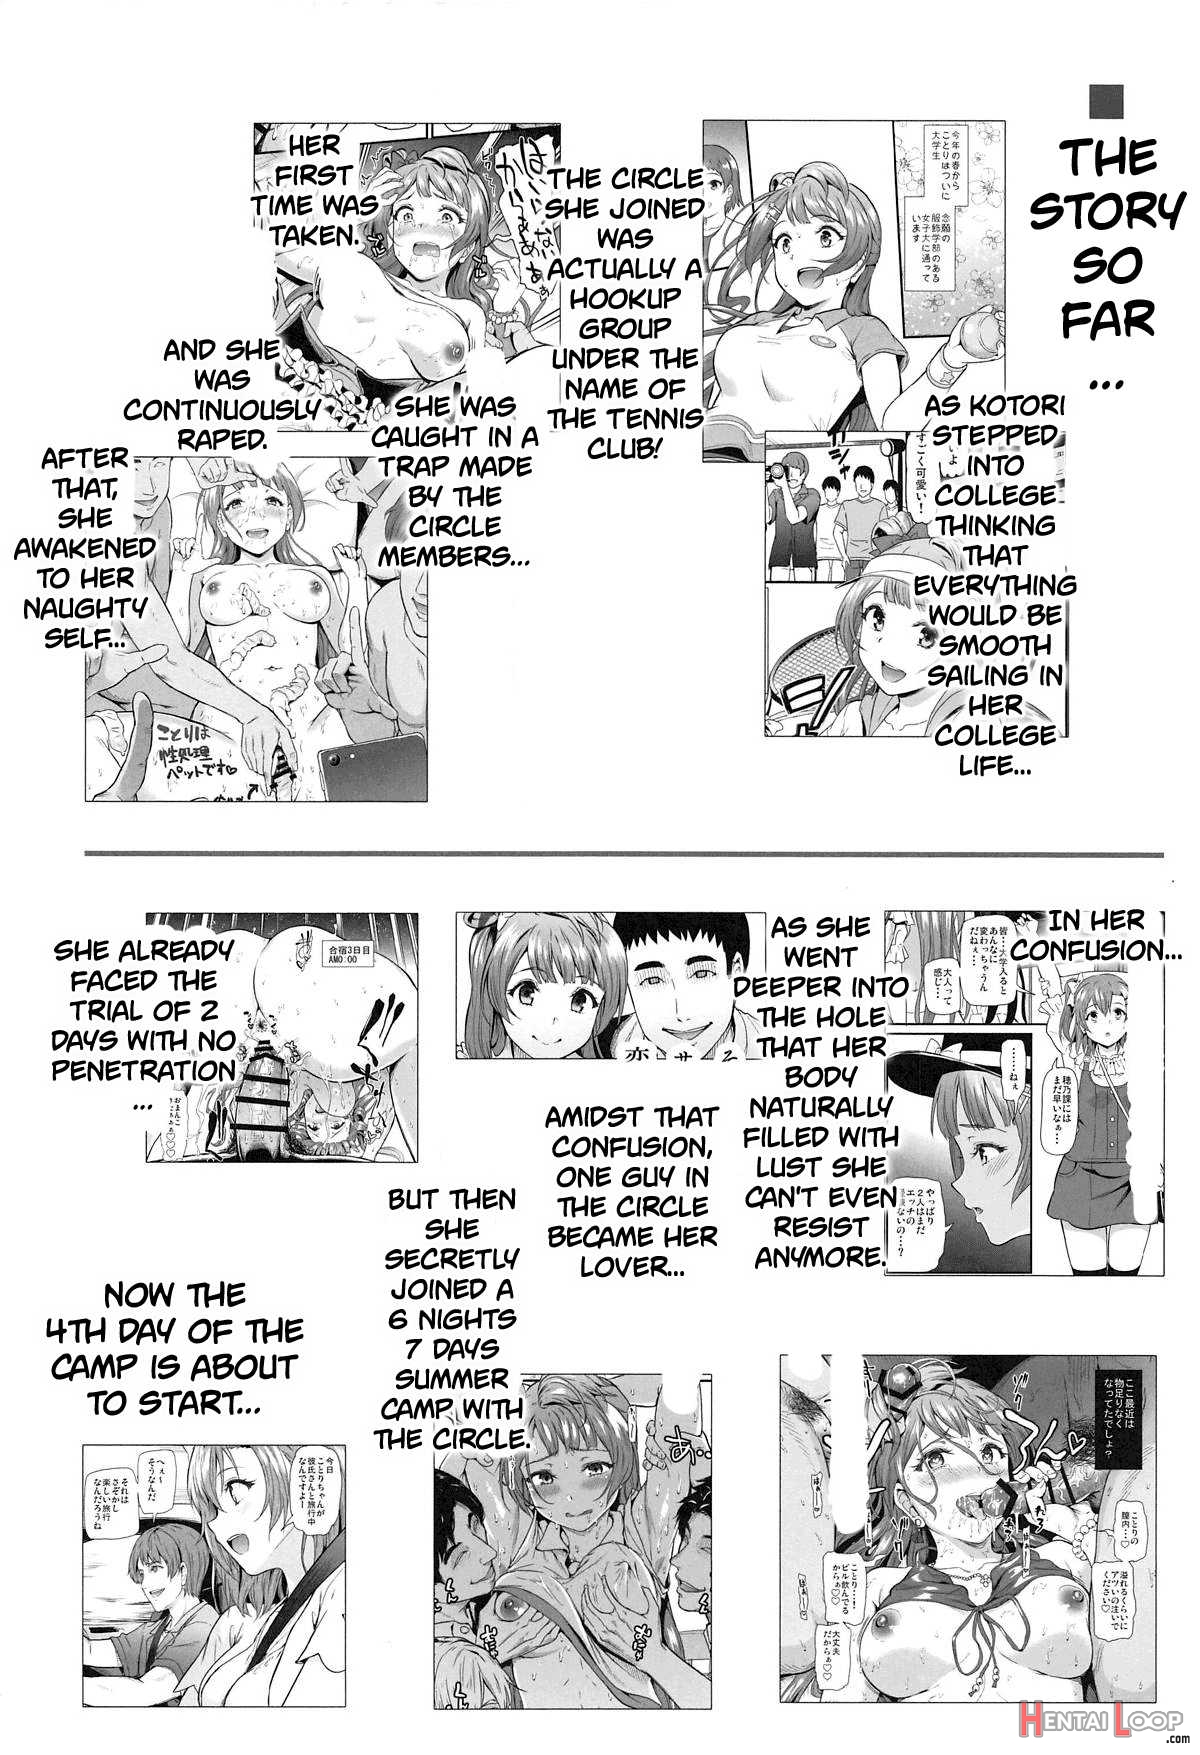 College Girl Kotori Minami's Hookup Circle Files Case #4 page 3